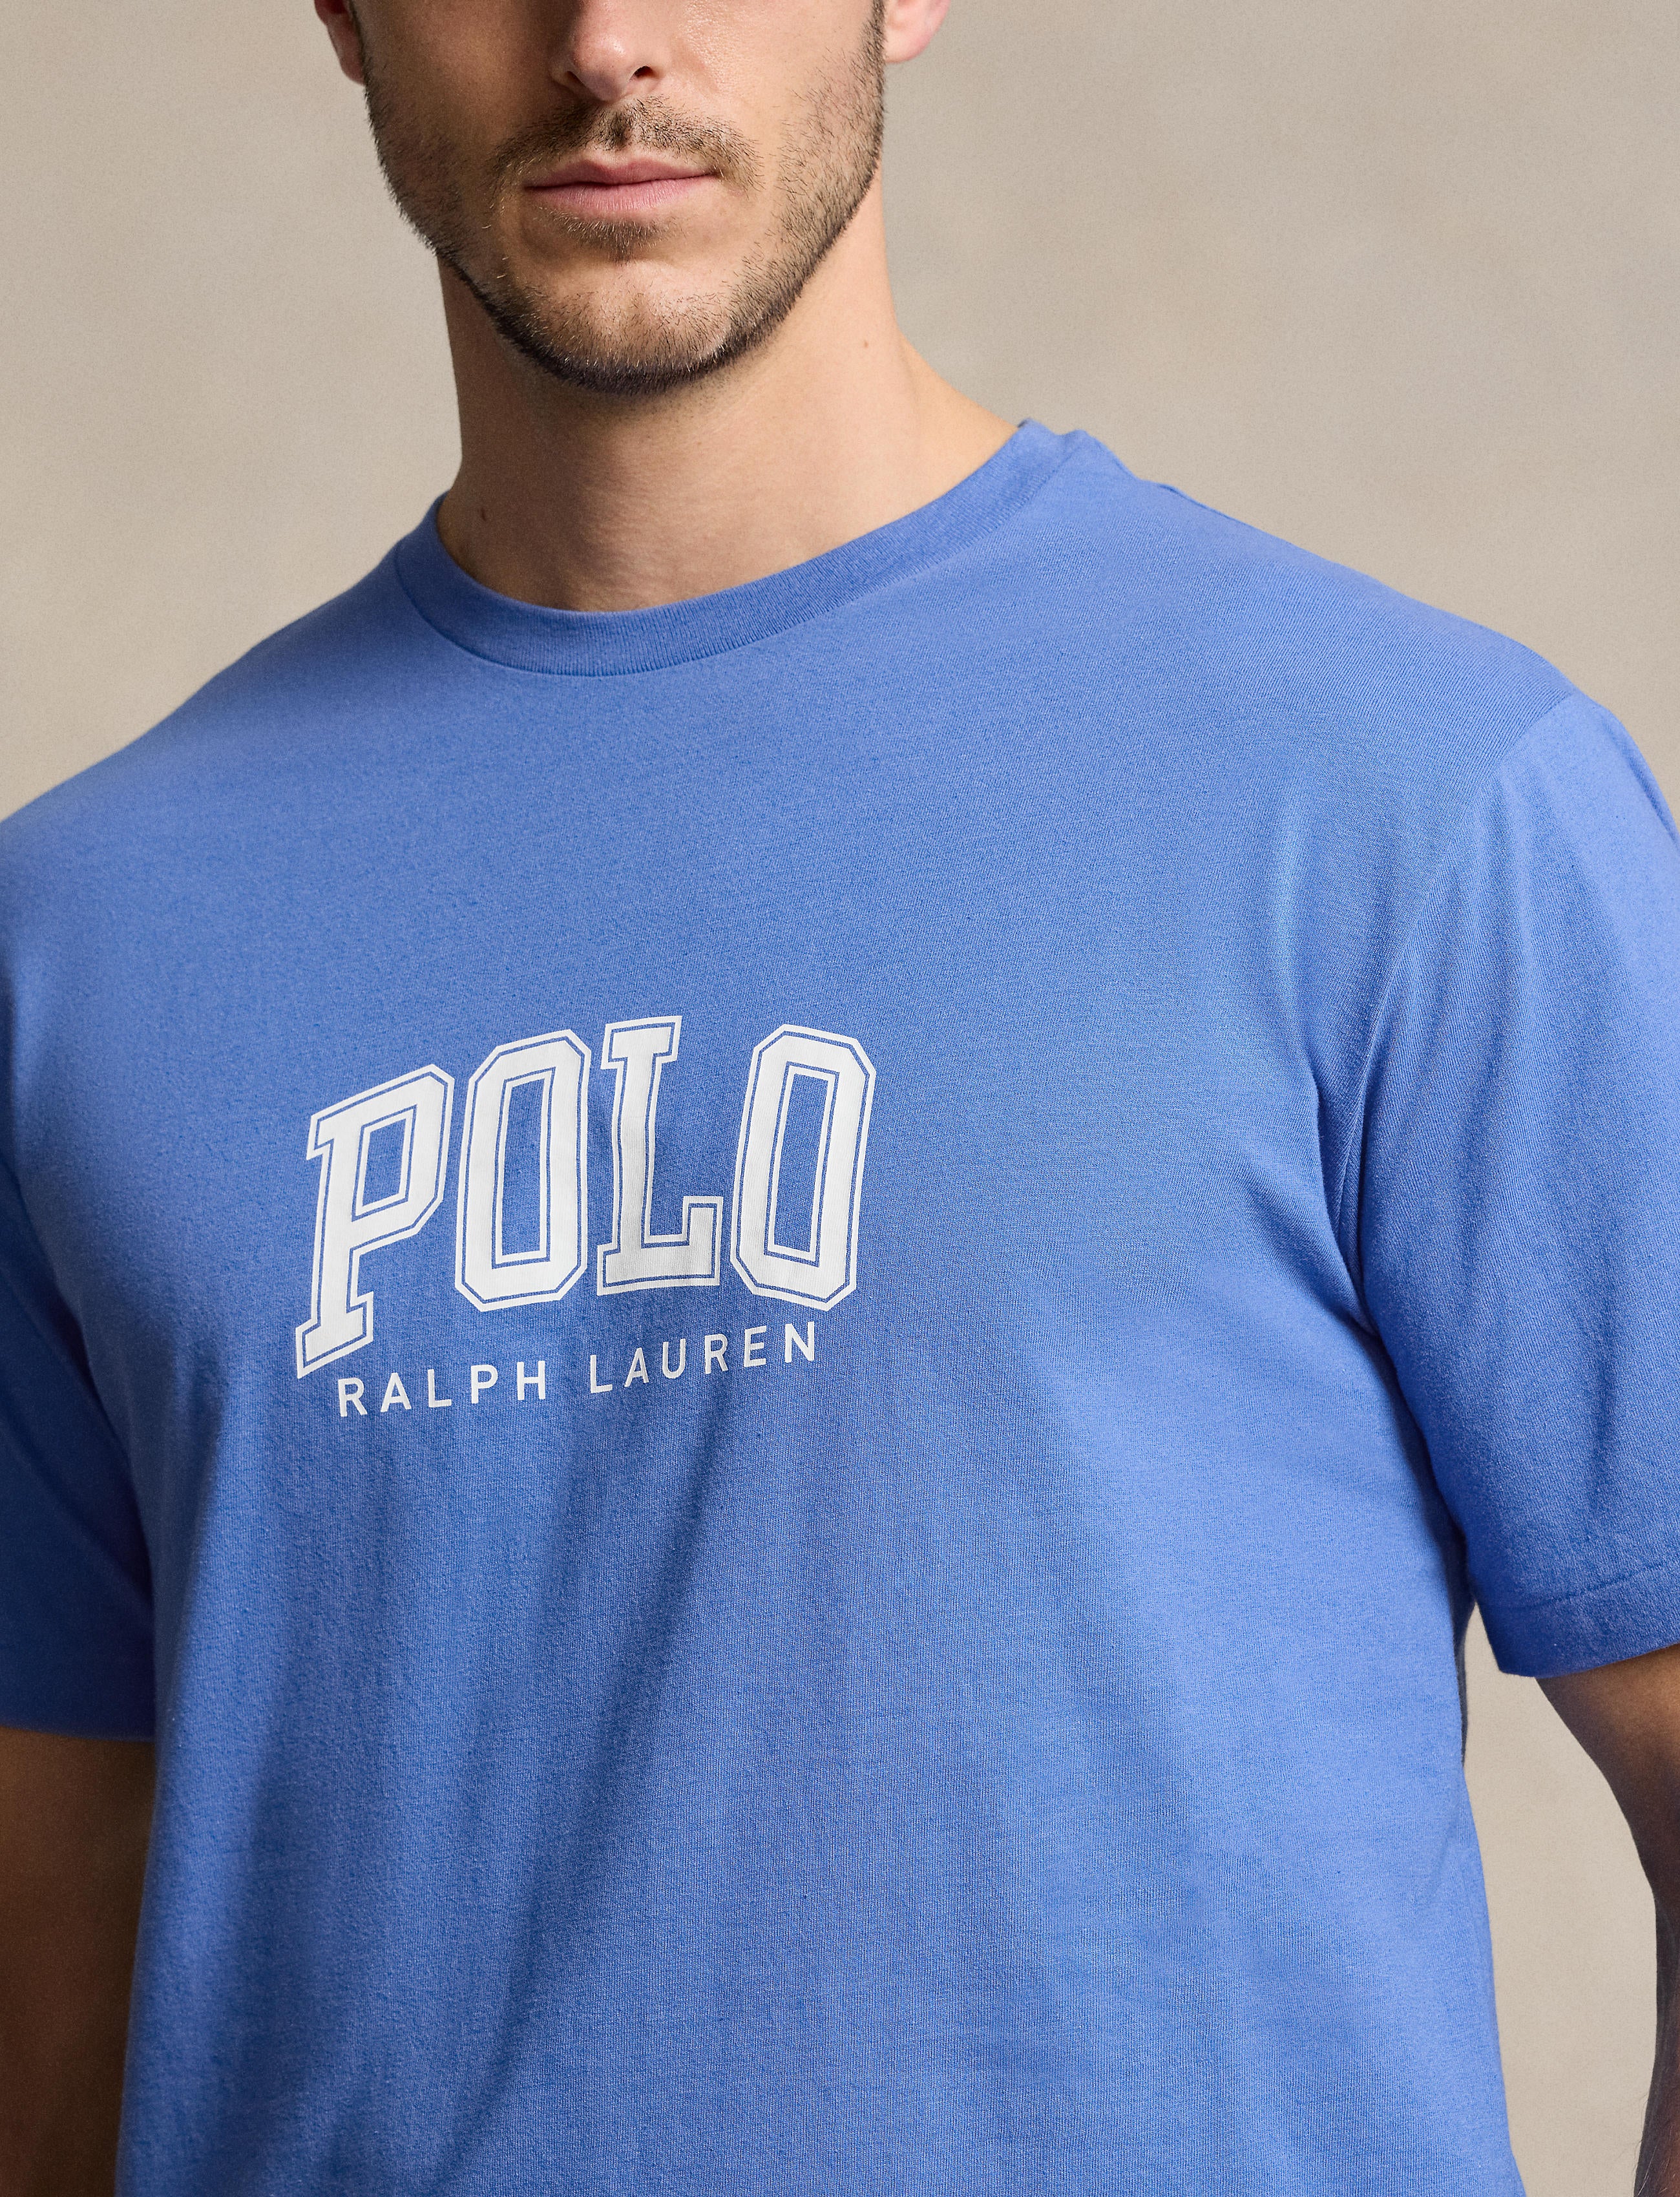 Polo Ralph Lauren Big & Tall Classics Tee Shirt